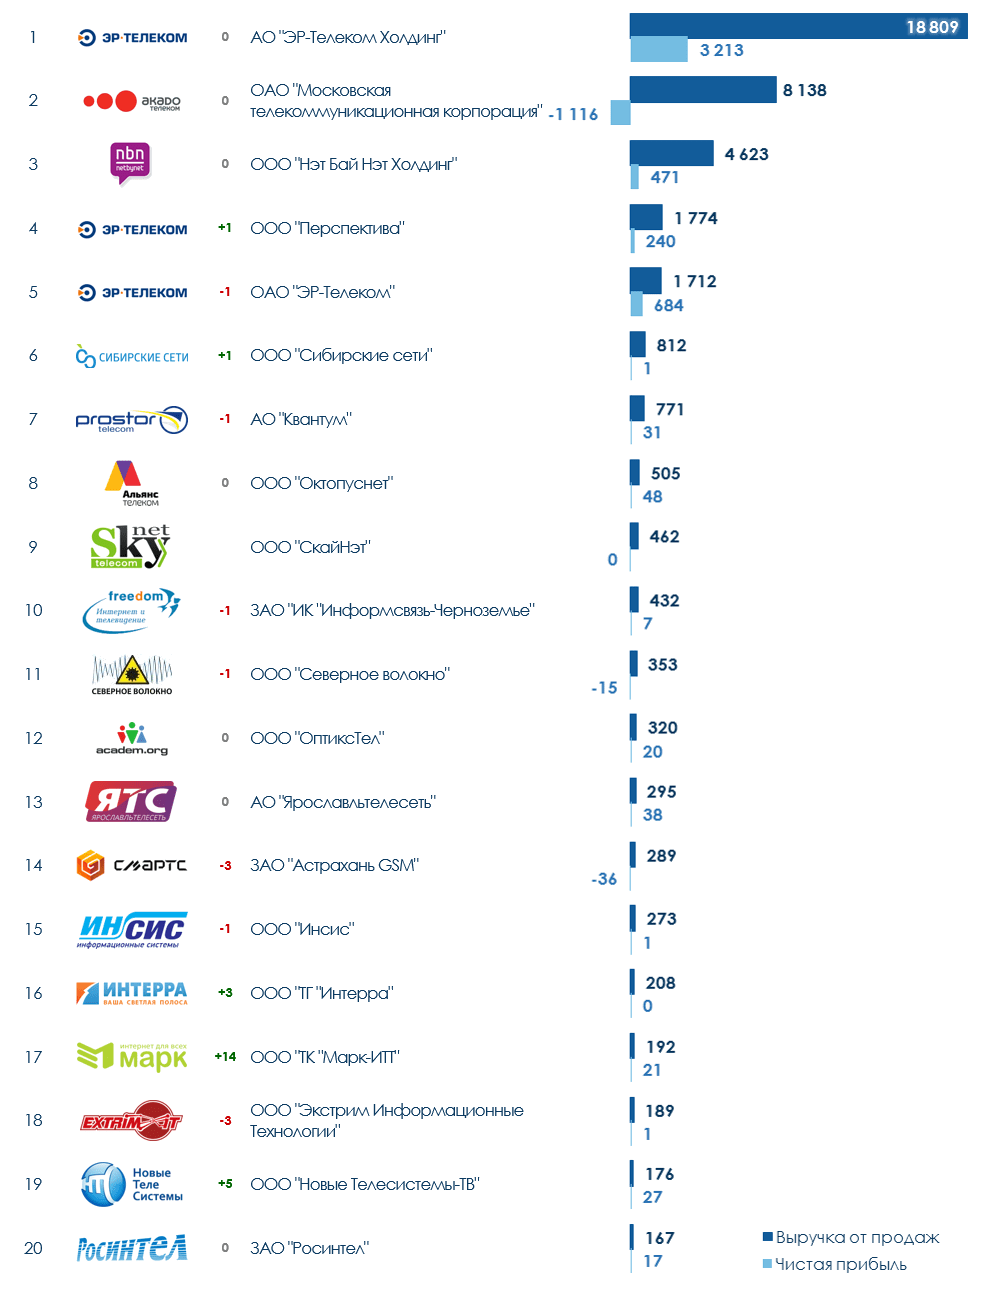 ТОП-20 компаний России в сфере передачи данных